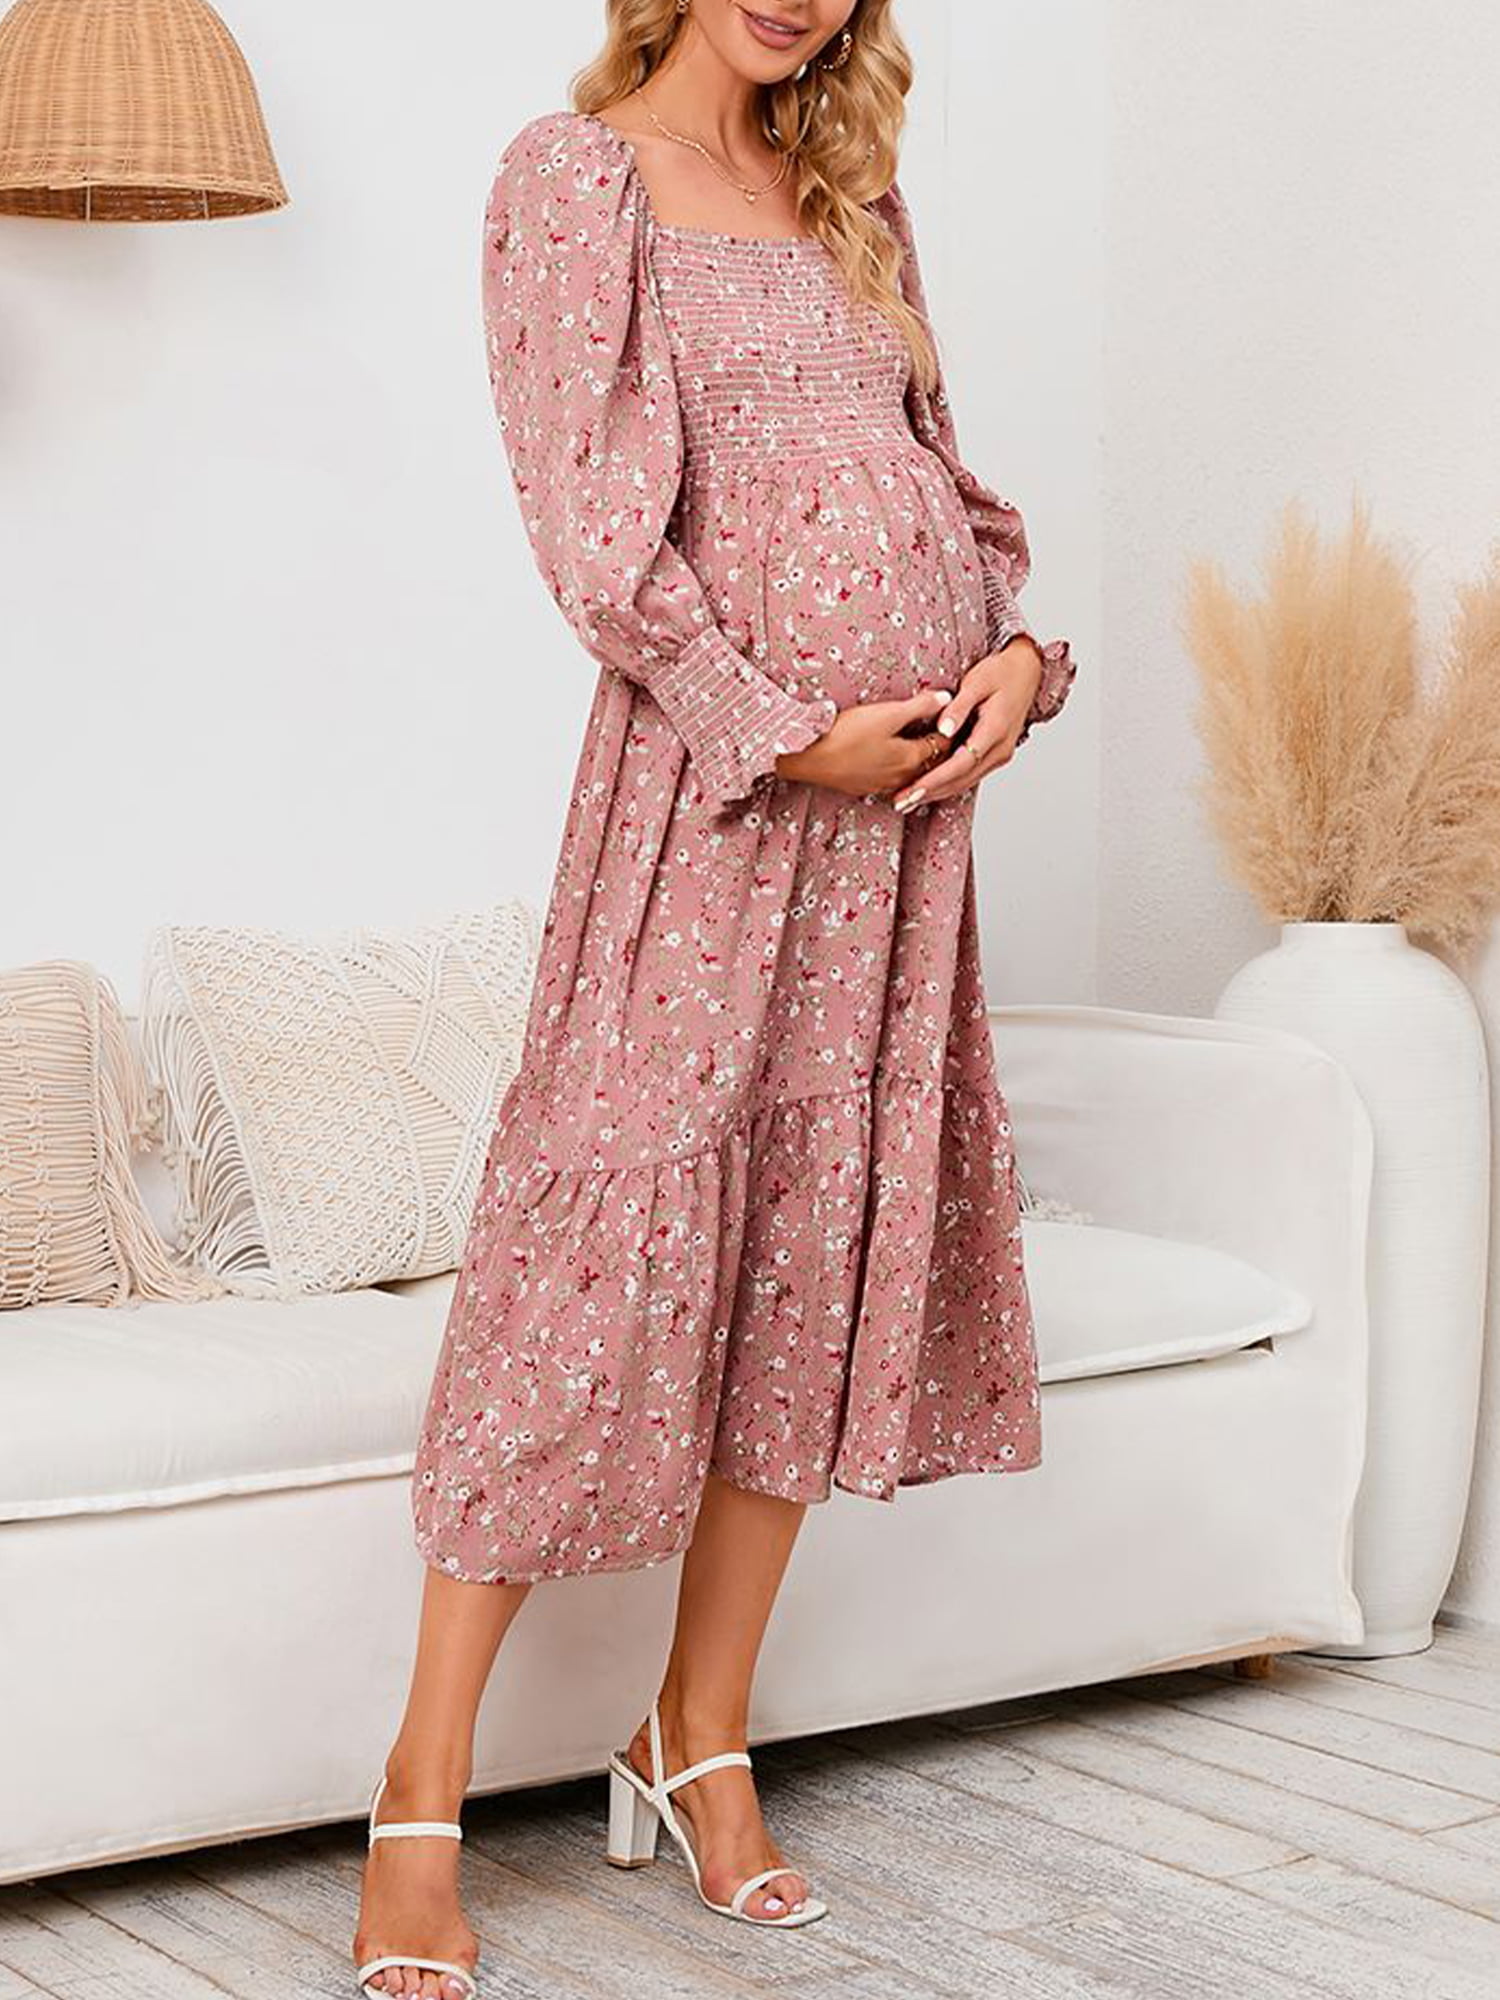 Maternity Dress Casual,Women'S Maternity Dress V-Neck Short Sleeve For Baby  Shower(XL,White) - Walmart.com